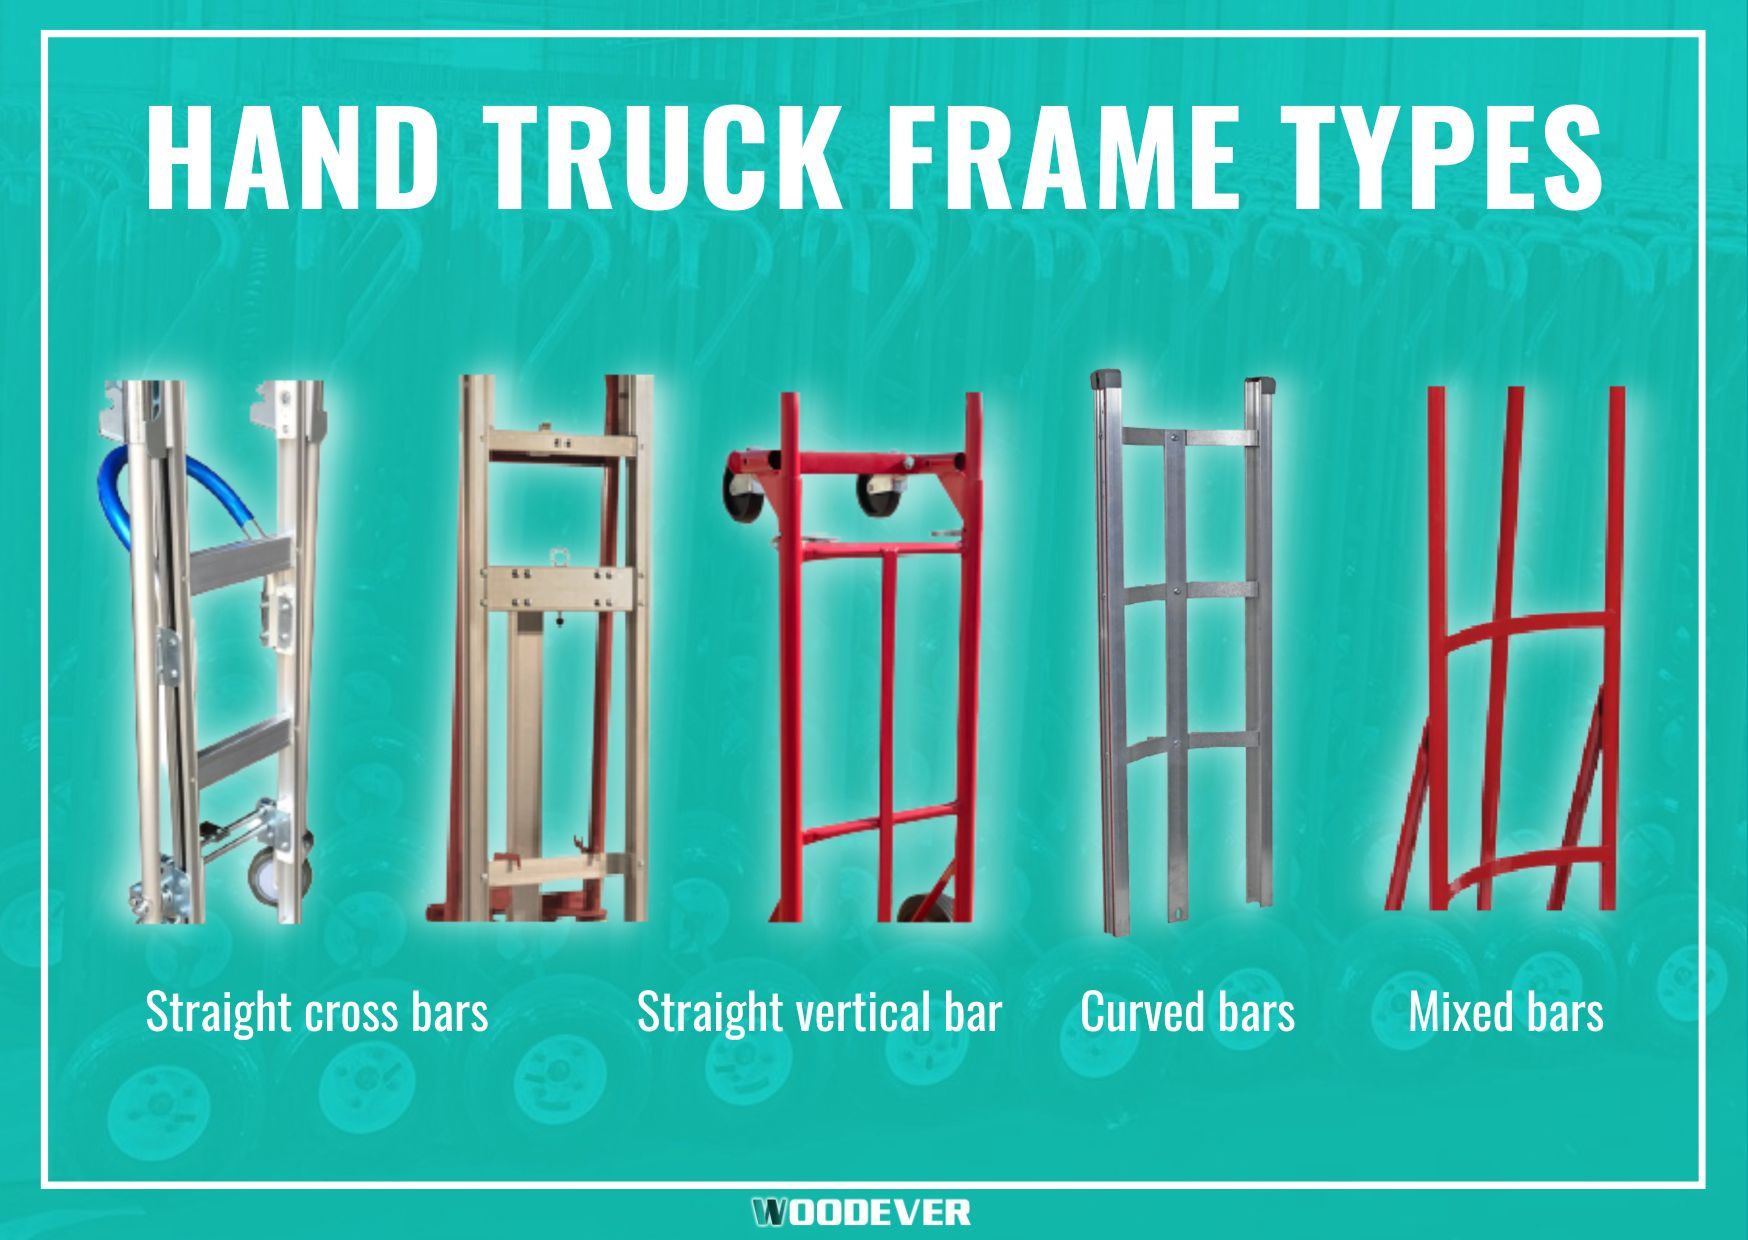 Tipos comuns de estrutura para carrinho de mão e carrinho de mão: estrutura de aço, estrutura de alumínio, estrutura curva.